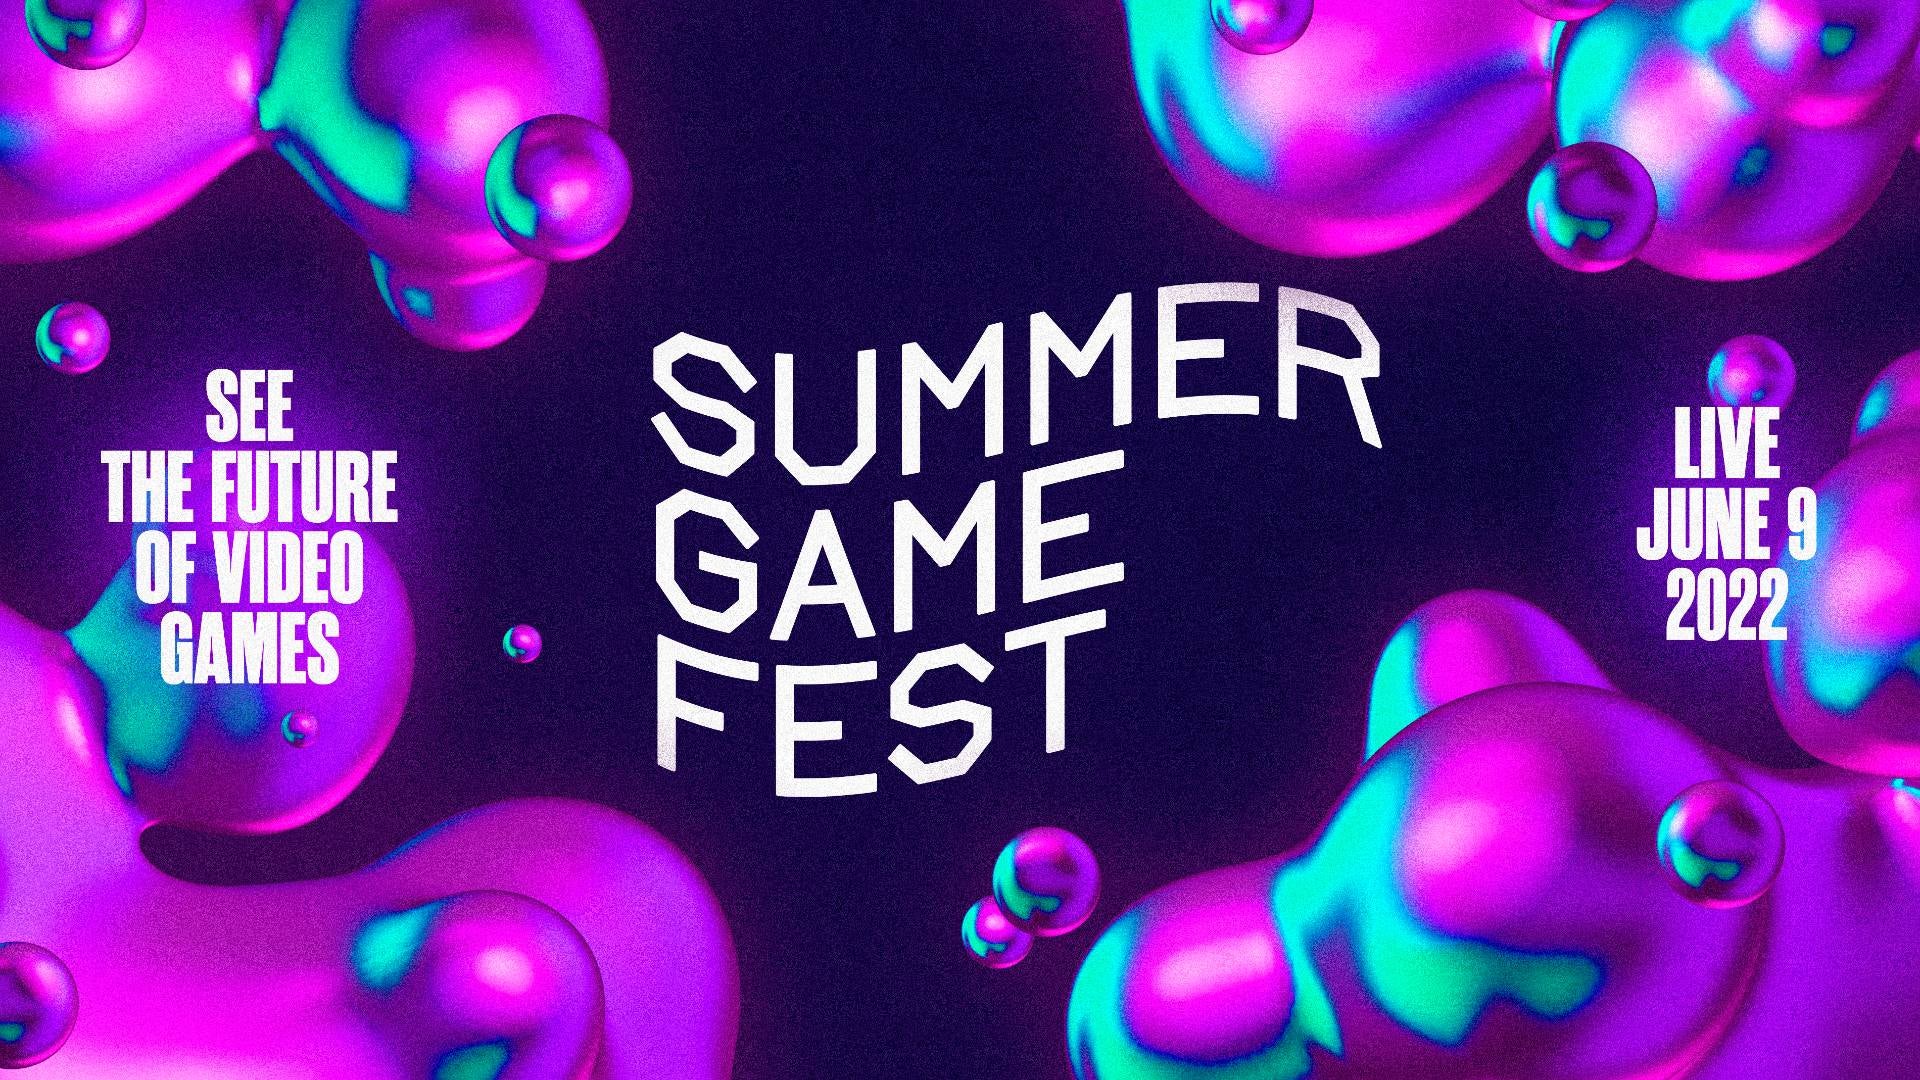 Summer Game Fest 2022 begins on June 9th.